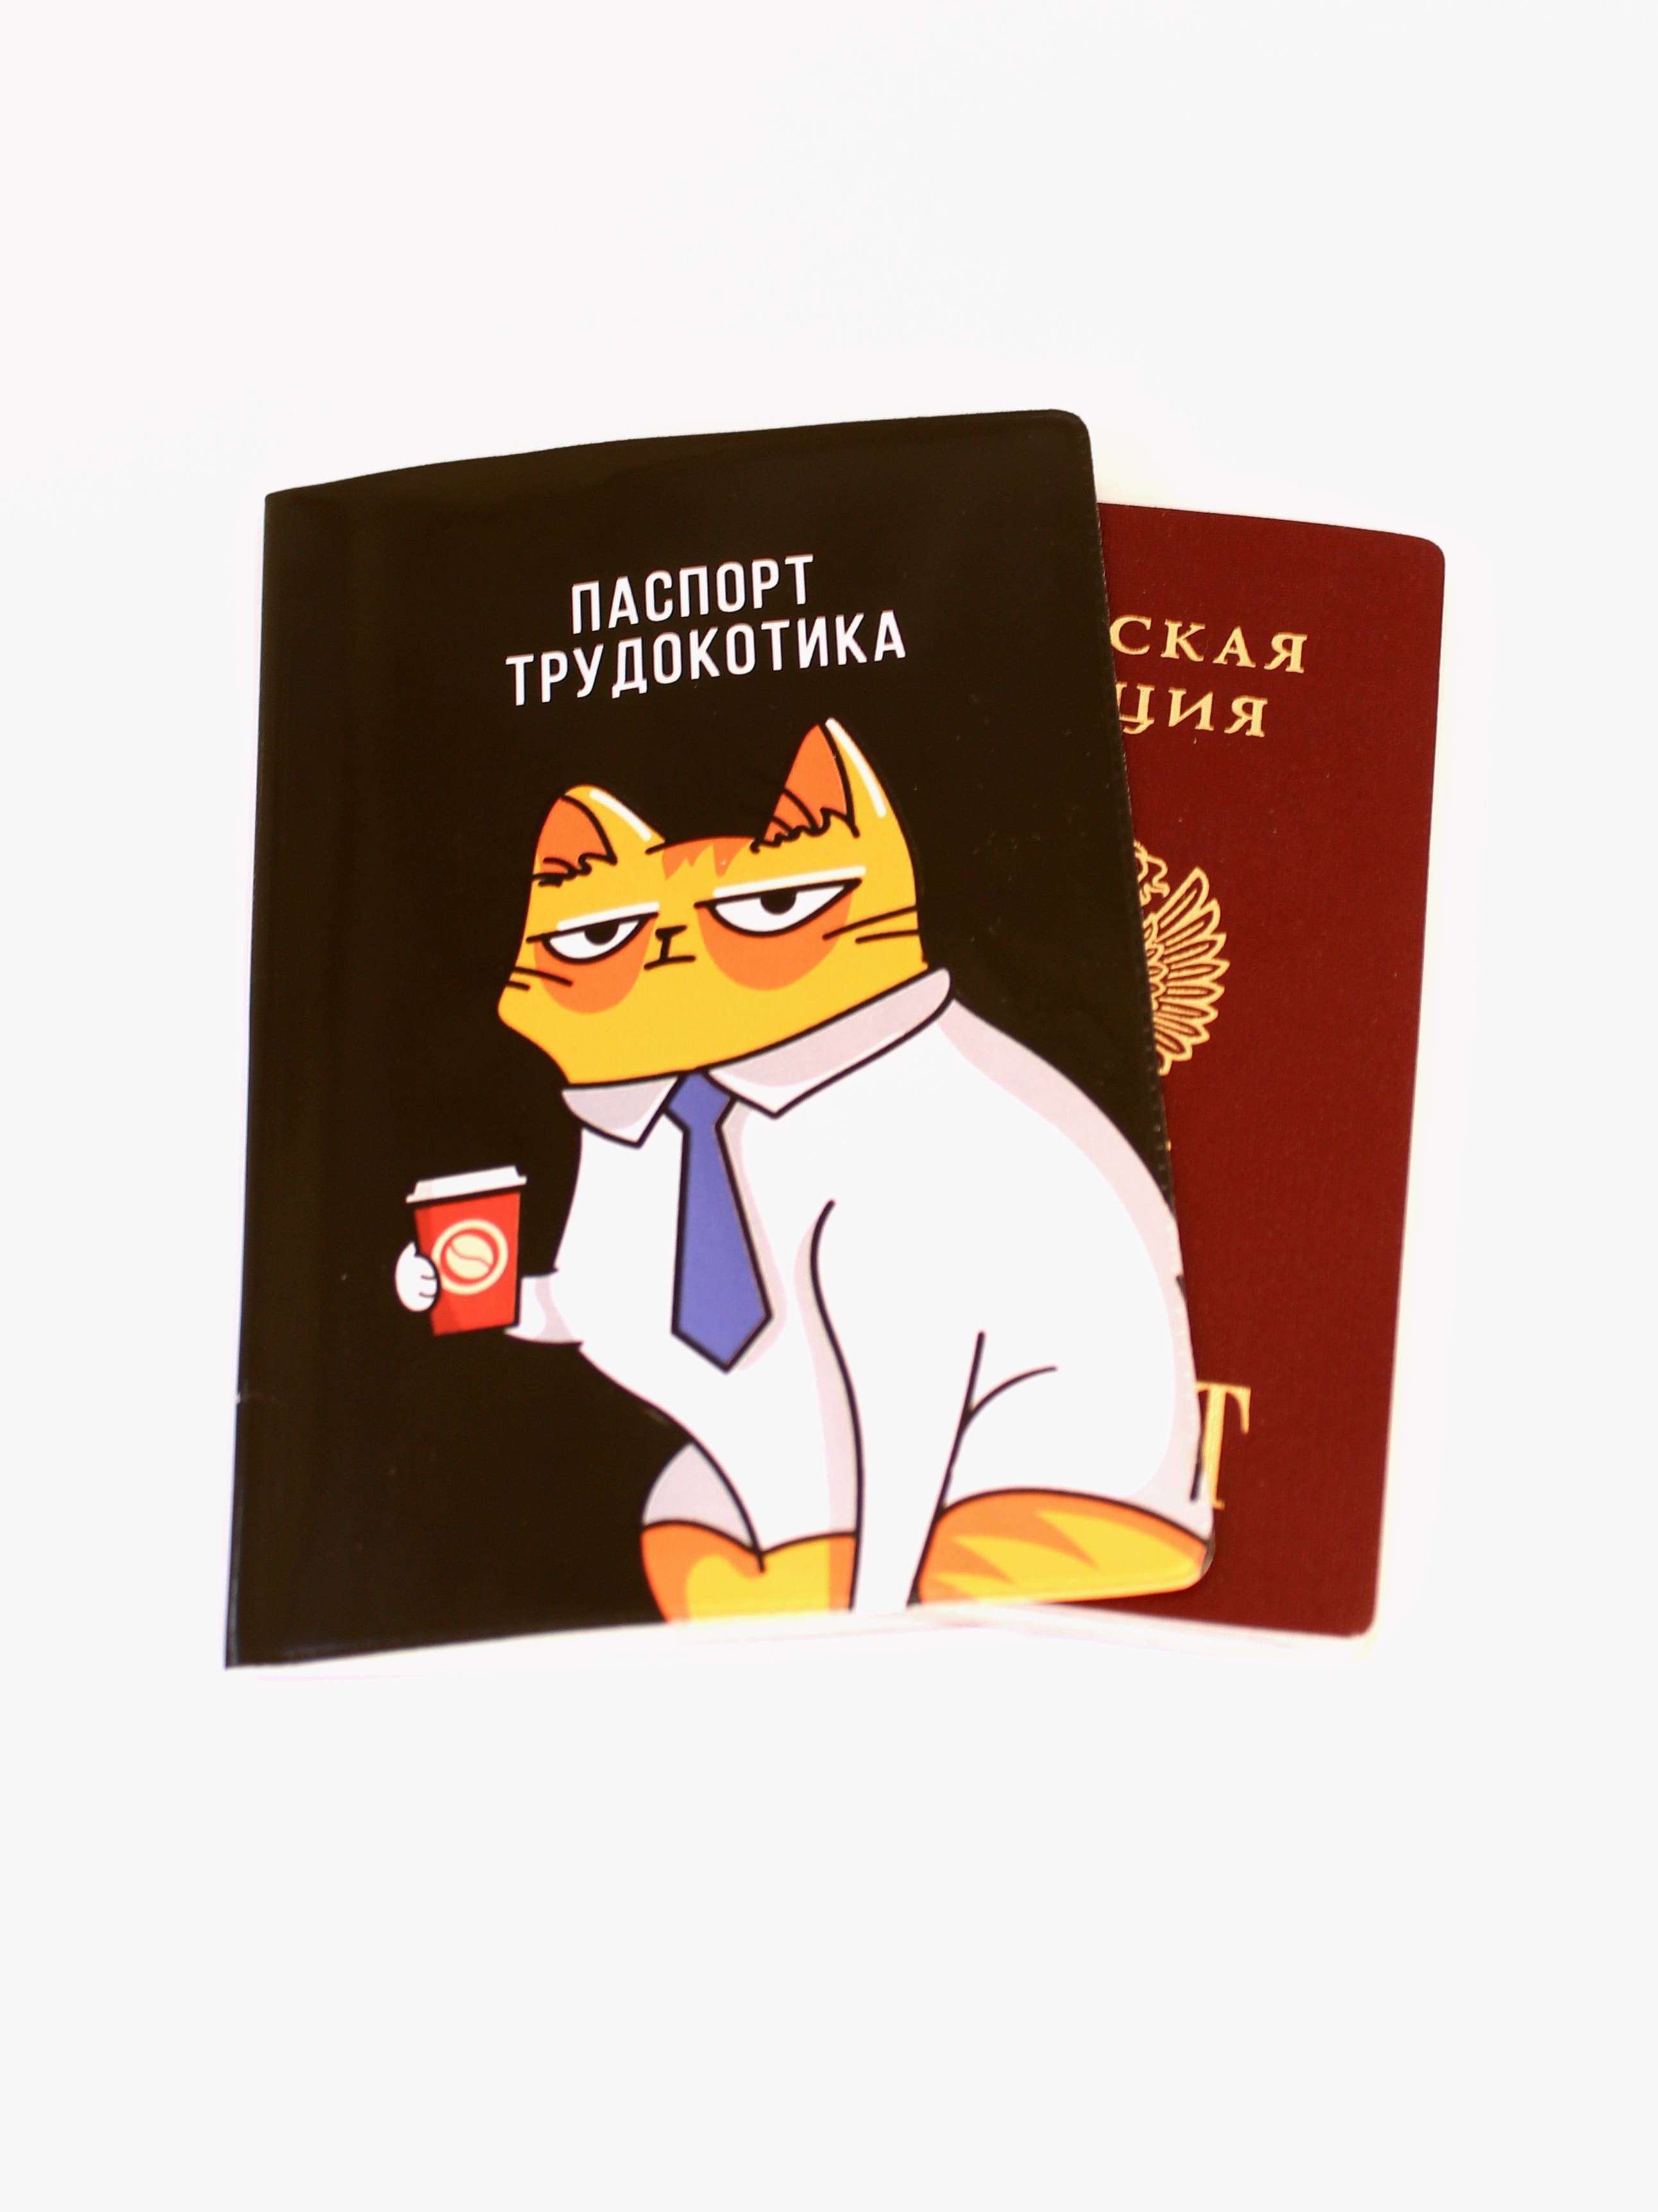 Обложка для паспорта кот